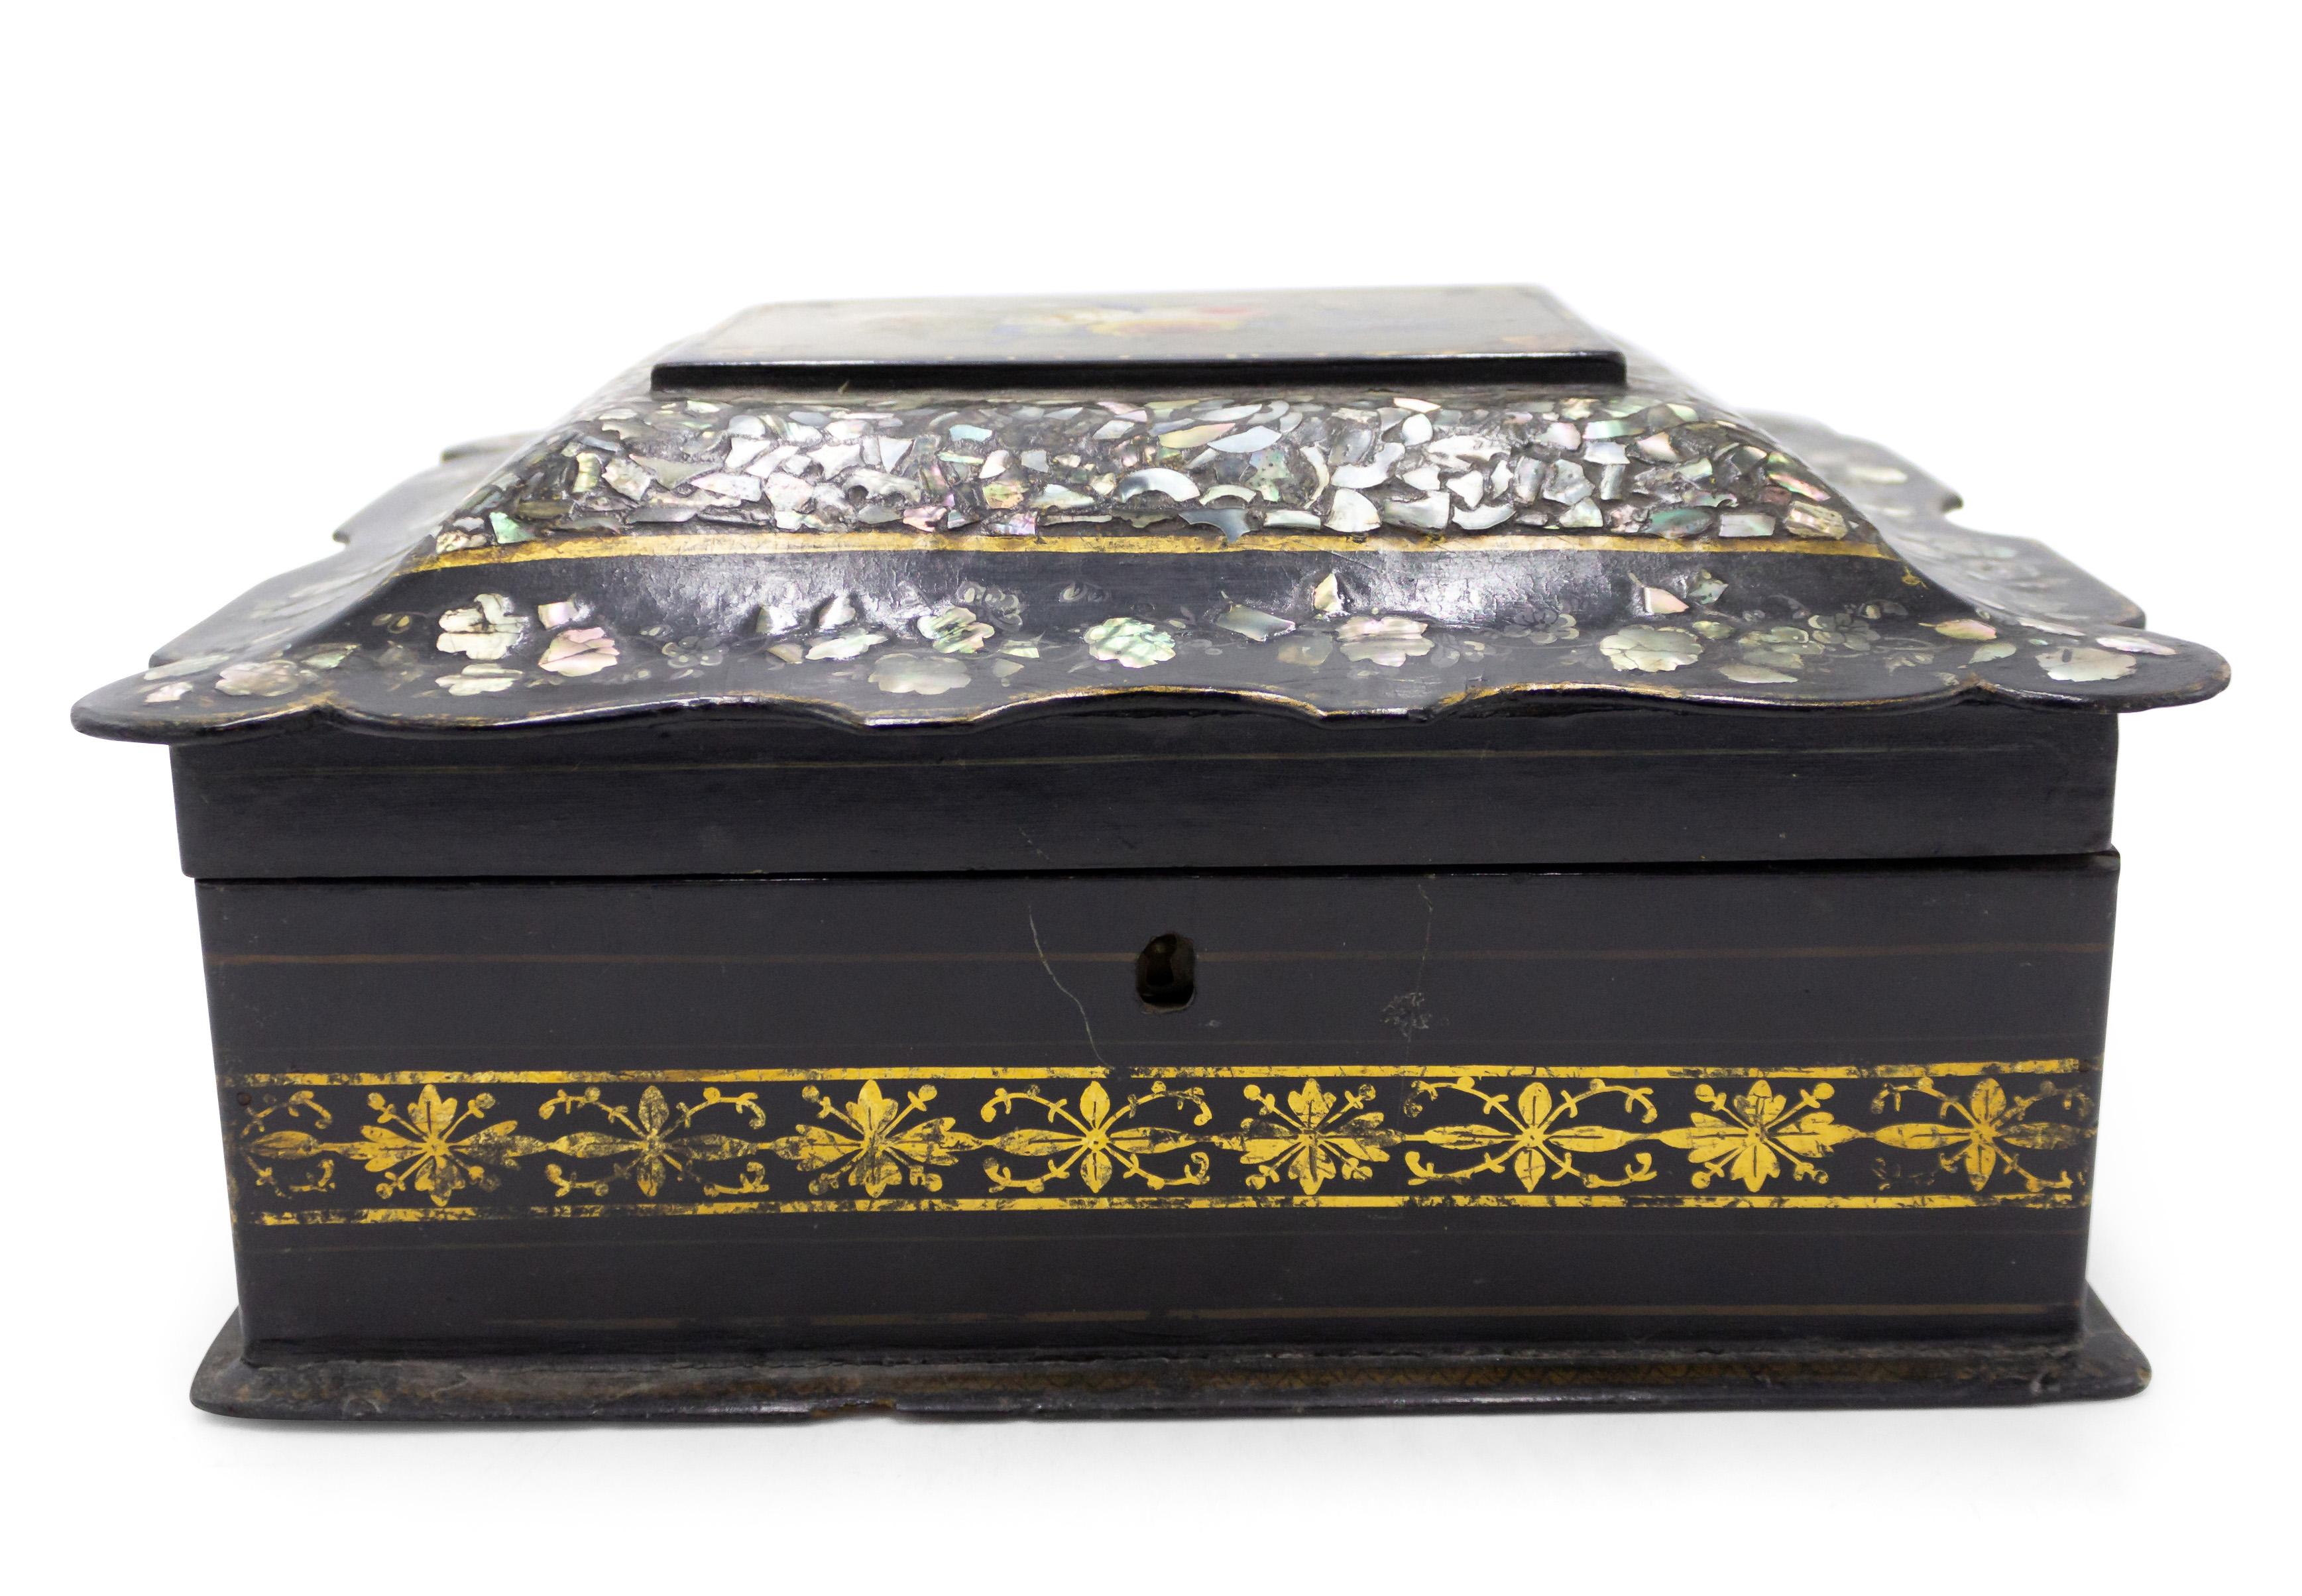 Englische viktorianische Schachtel mit Perleneinlage aus Pappmaché und einem mit Blumen verzierten Deckel.
 